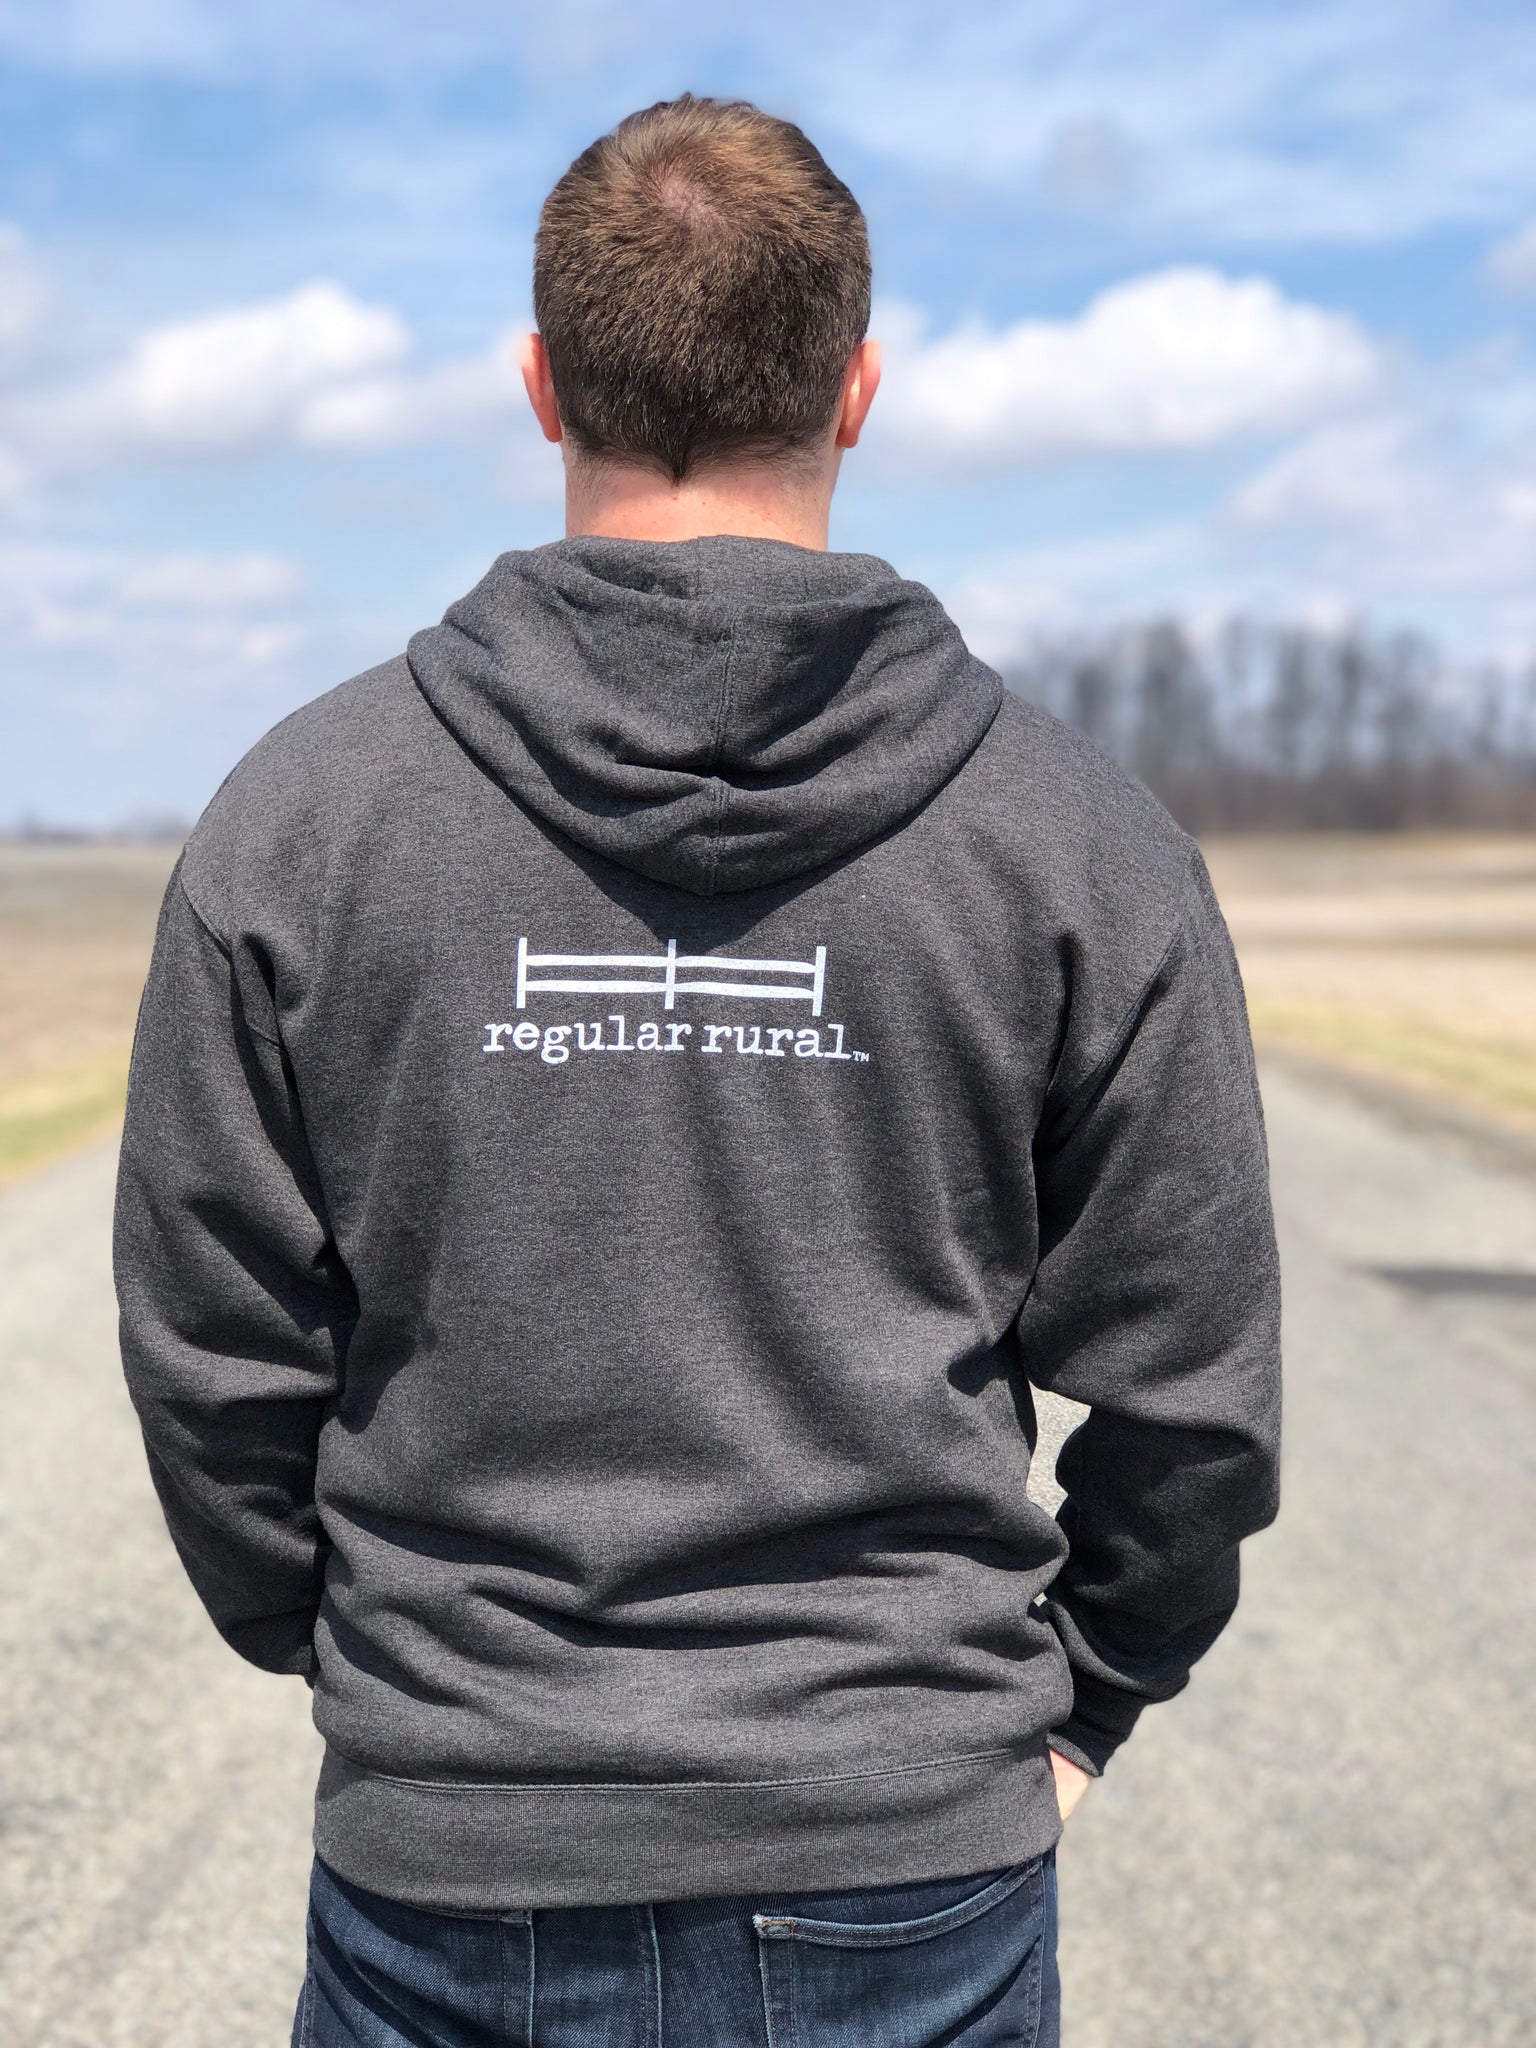 regular rural hoodie